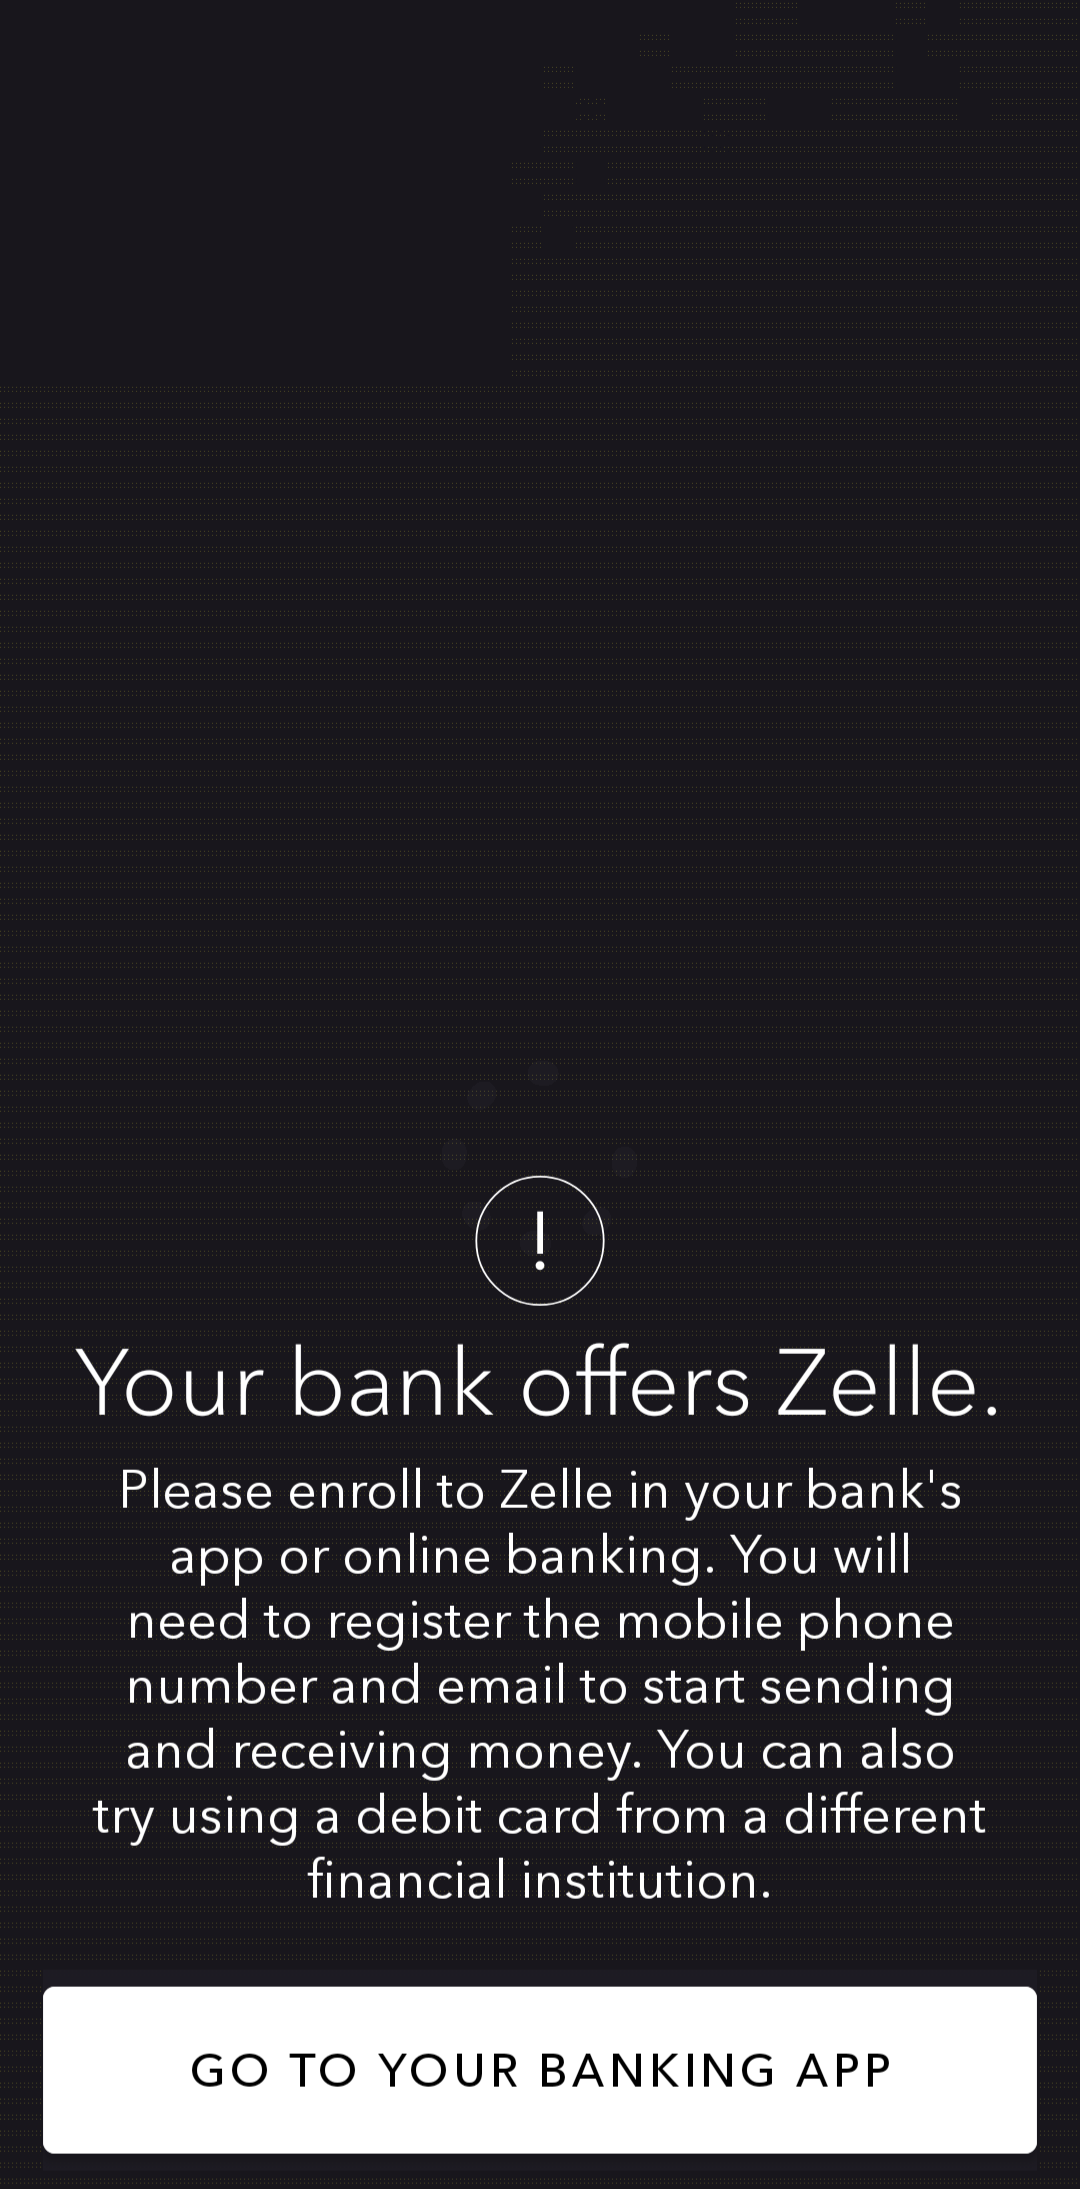 Halaman Bank Anda Menawarkan Zelle di aplikasi Zelle